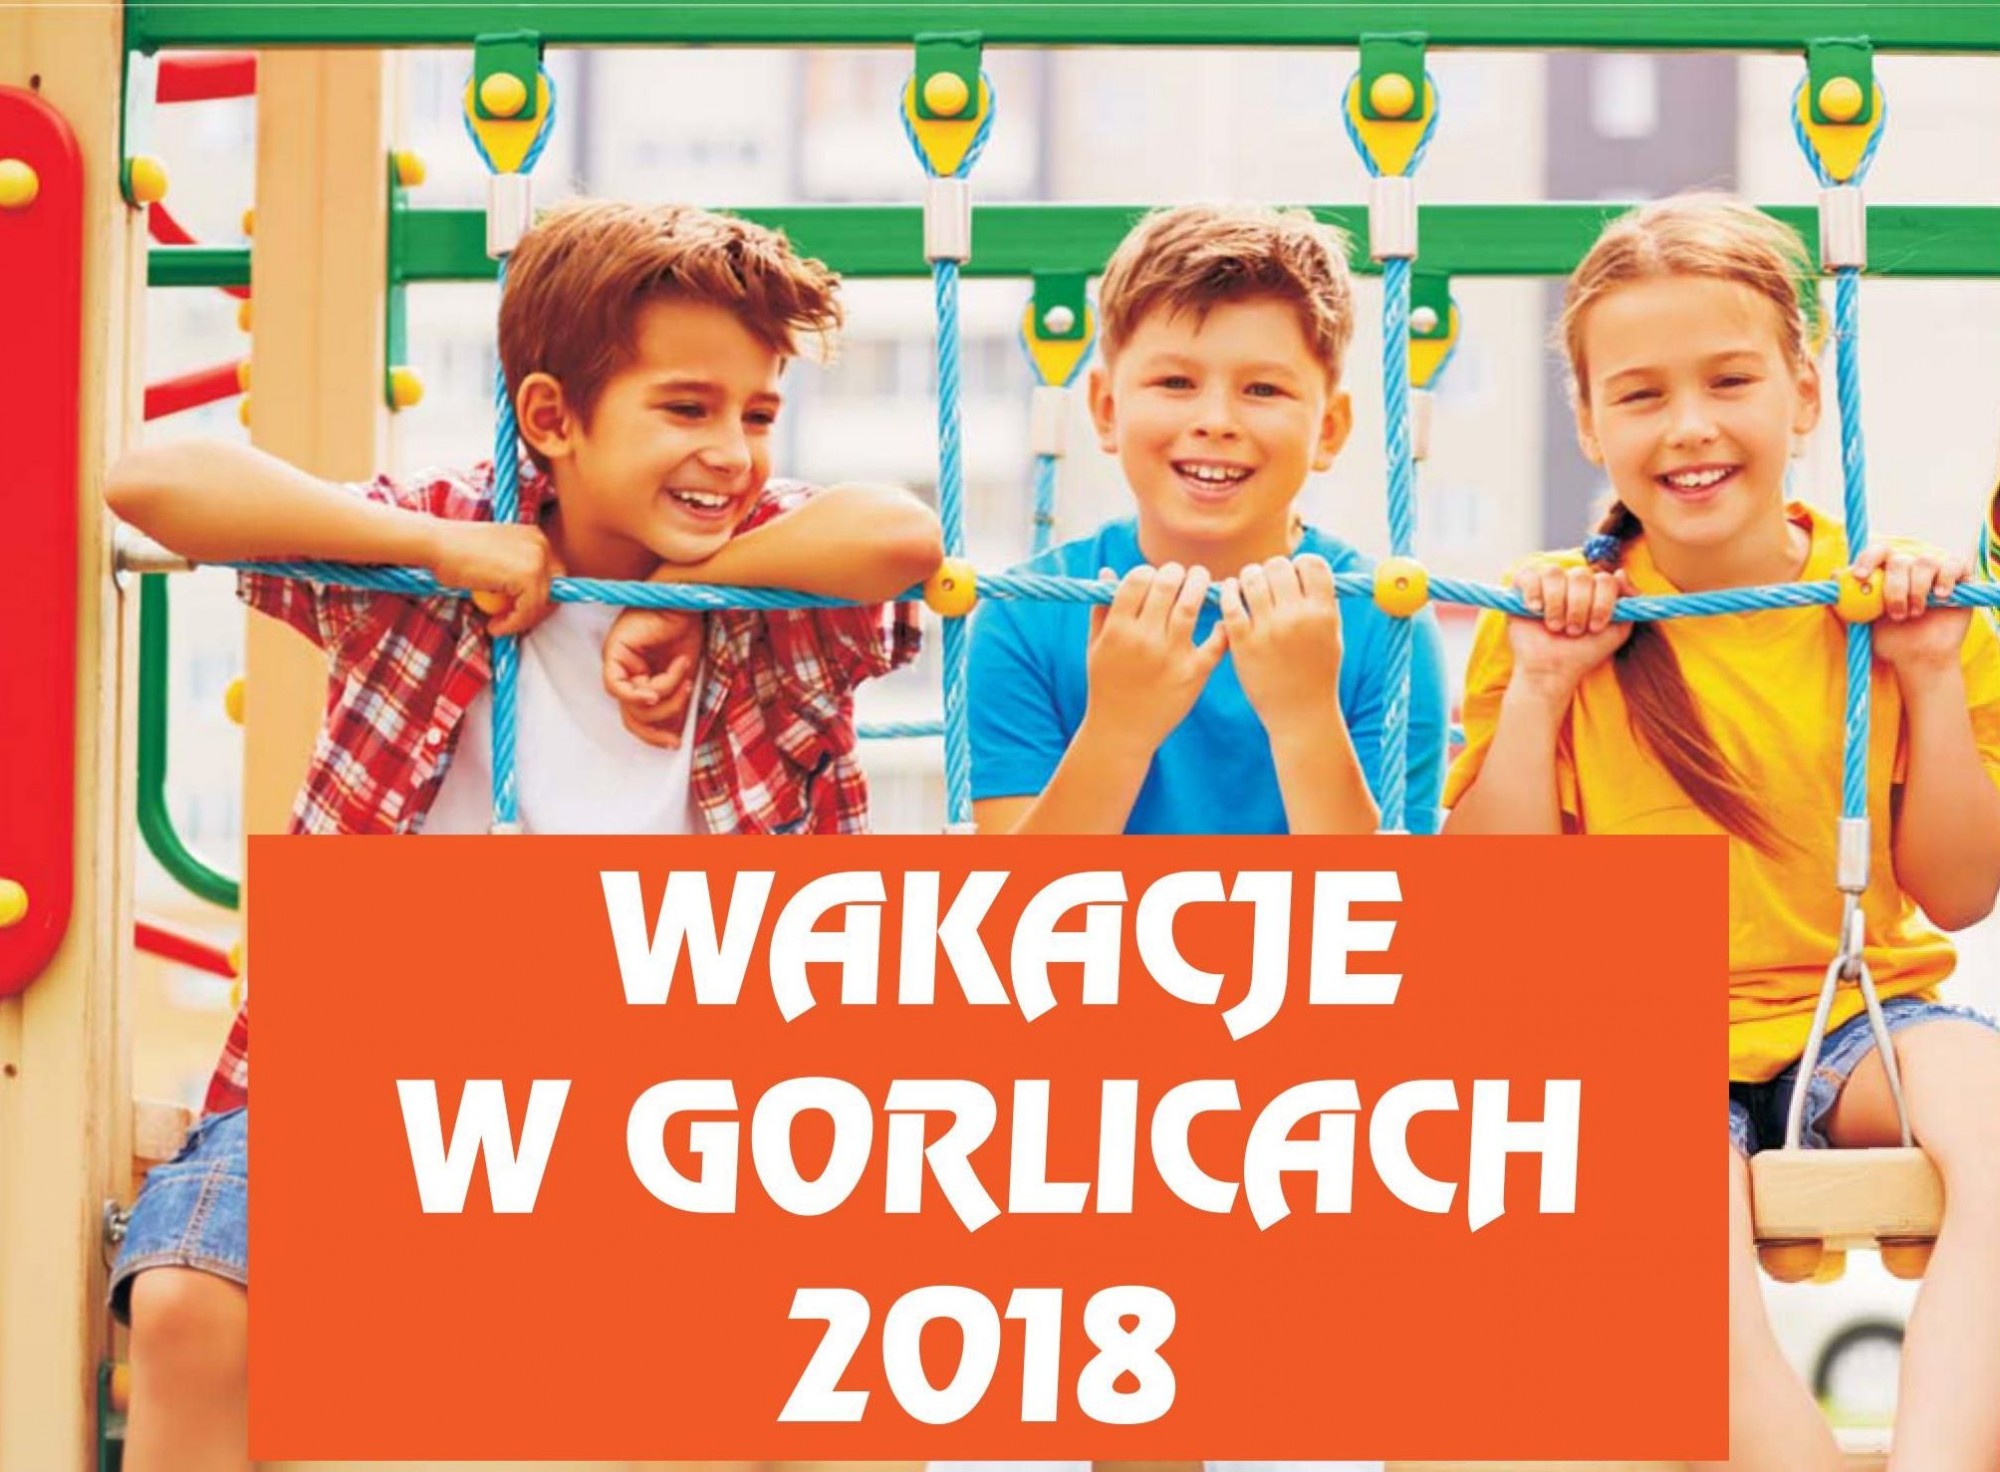 Wakacje 2018 w Gorlicach!